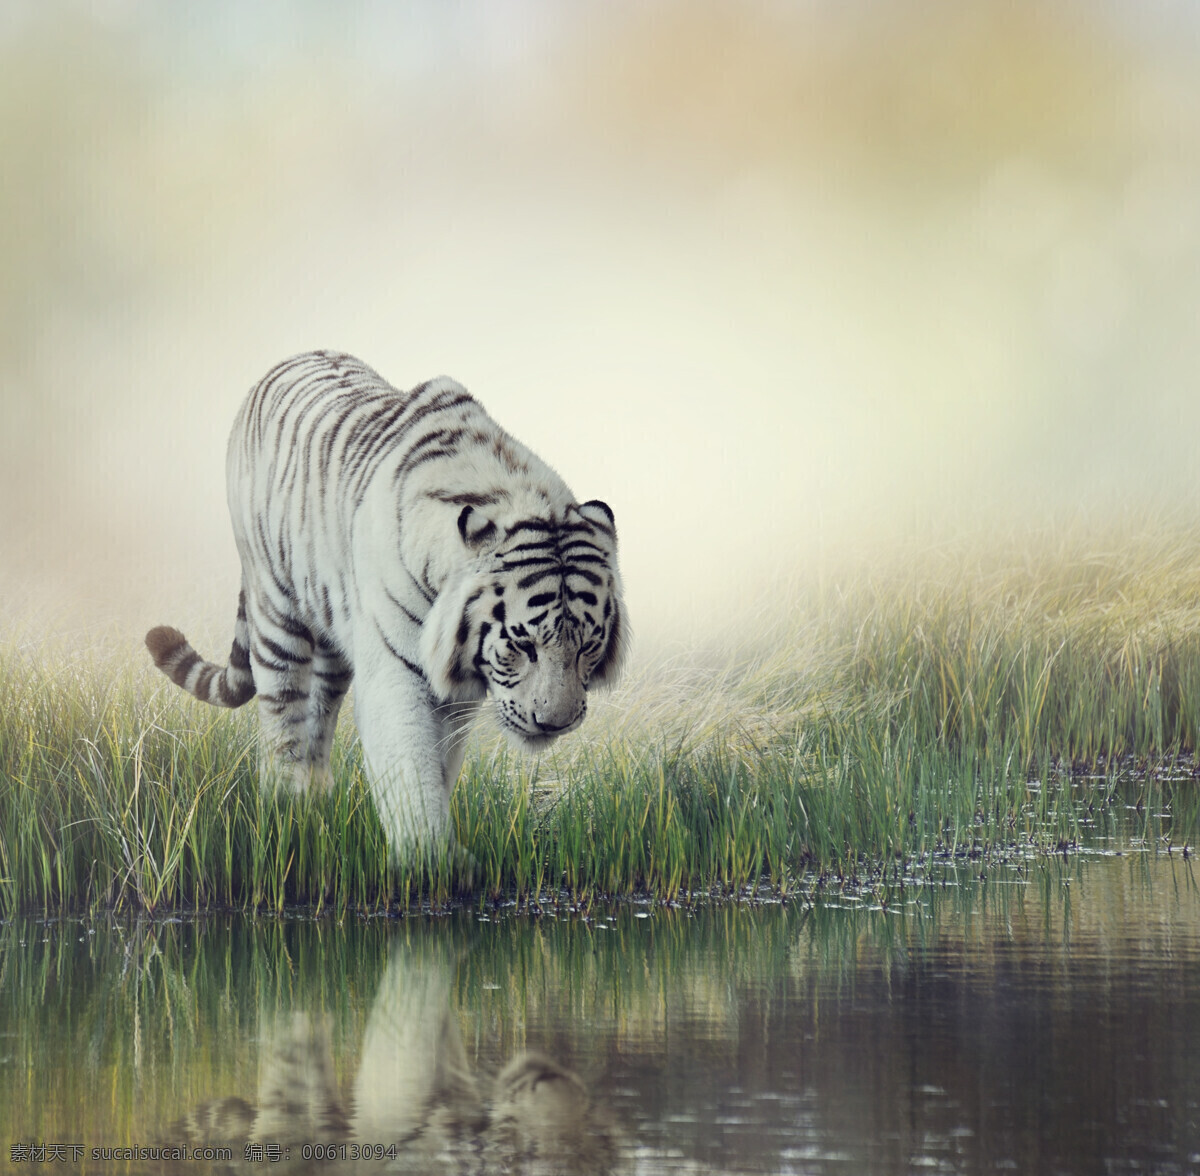 炫酷老虎 唯美 炫酷 可爱 动物 野生 凶猛 老虎 孟加拉虎 白虎 生物世界 野生动物